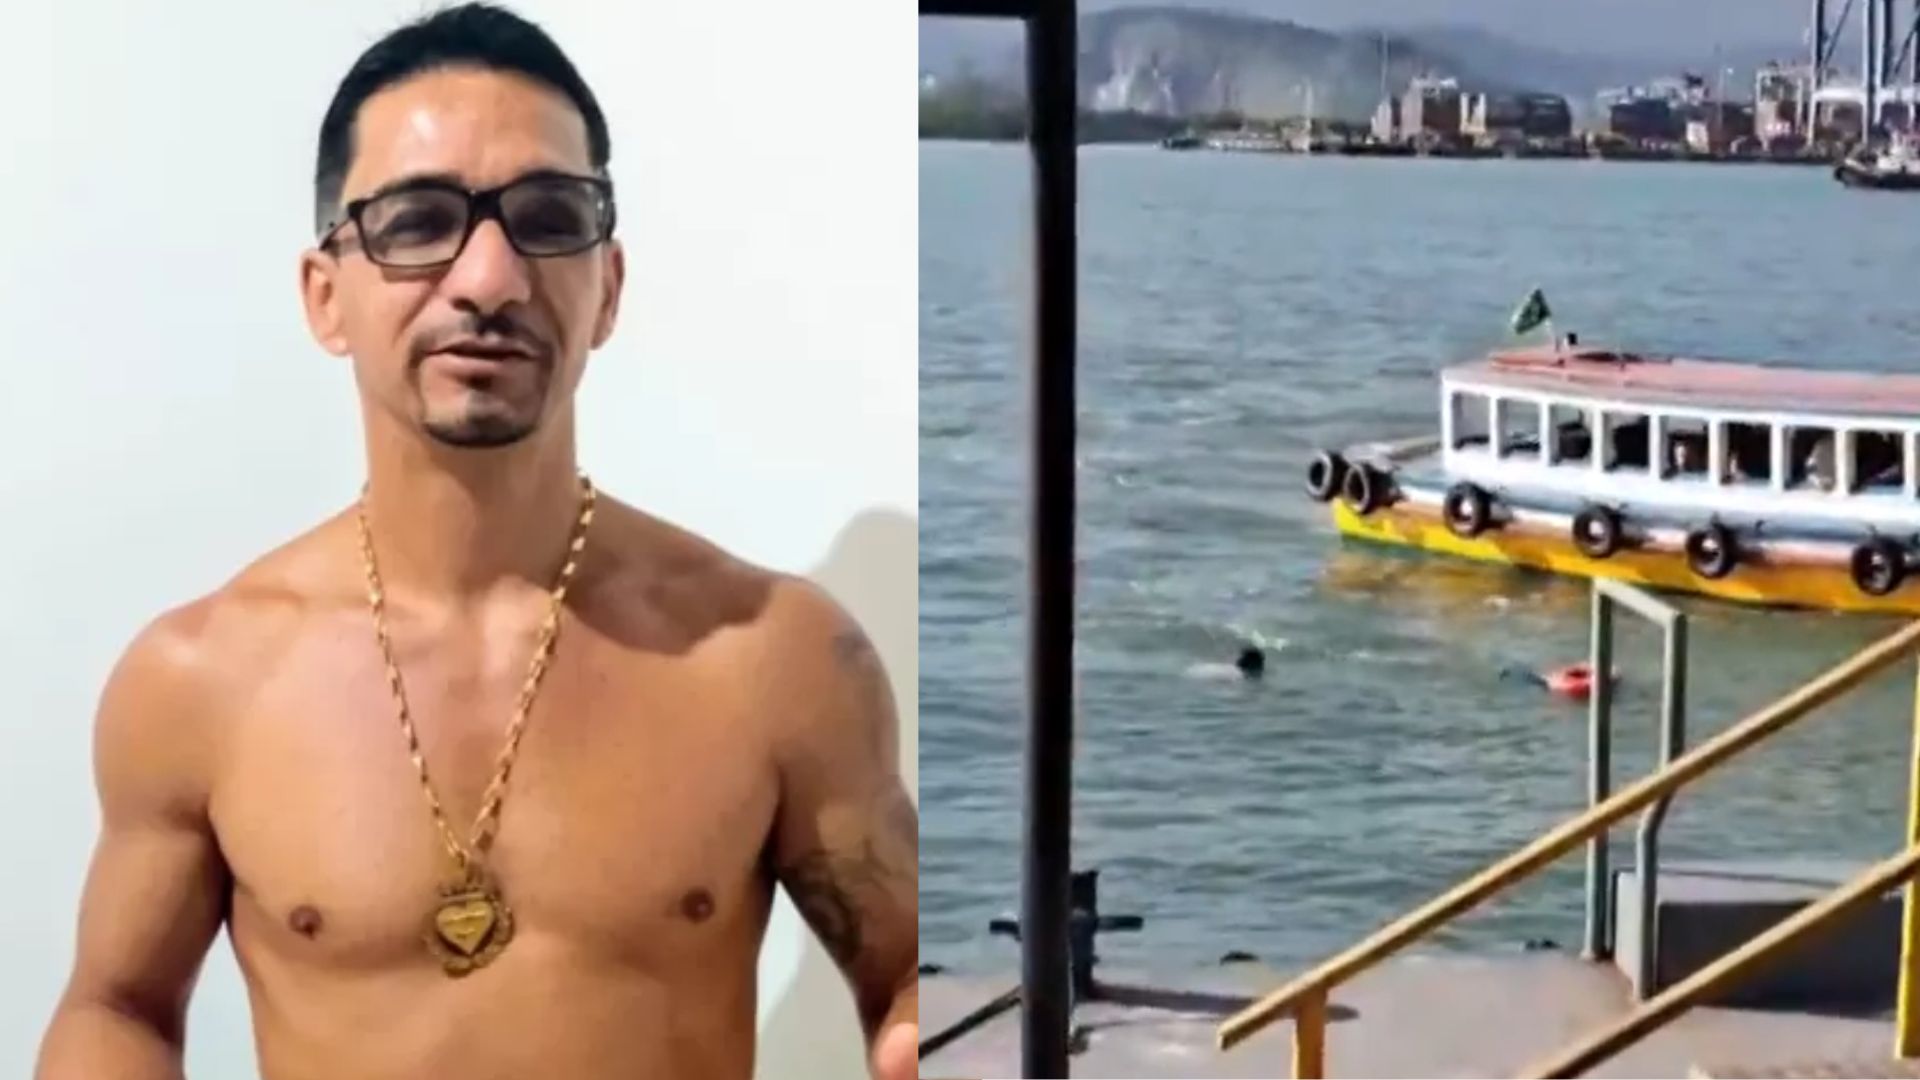 Vídeo: Homem morre ao pular no mar para vencer uma suposta aposta de R$ 50, em SP; família contesta versão